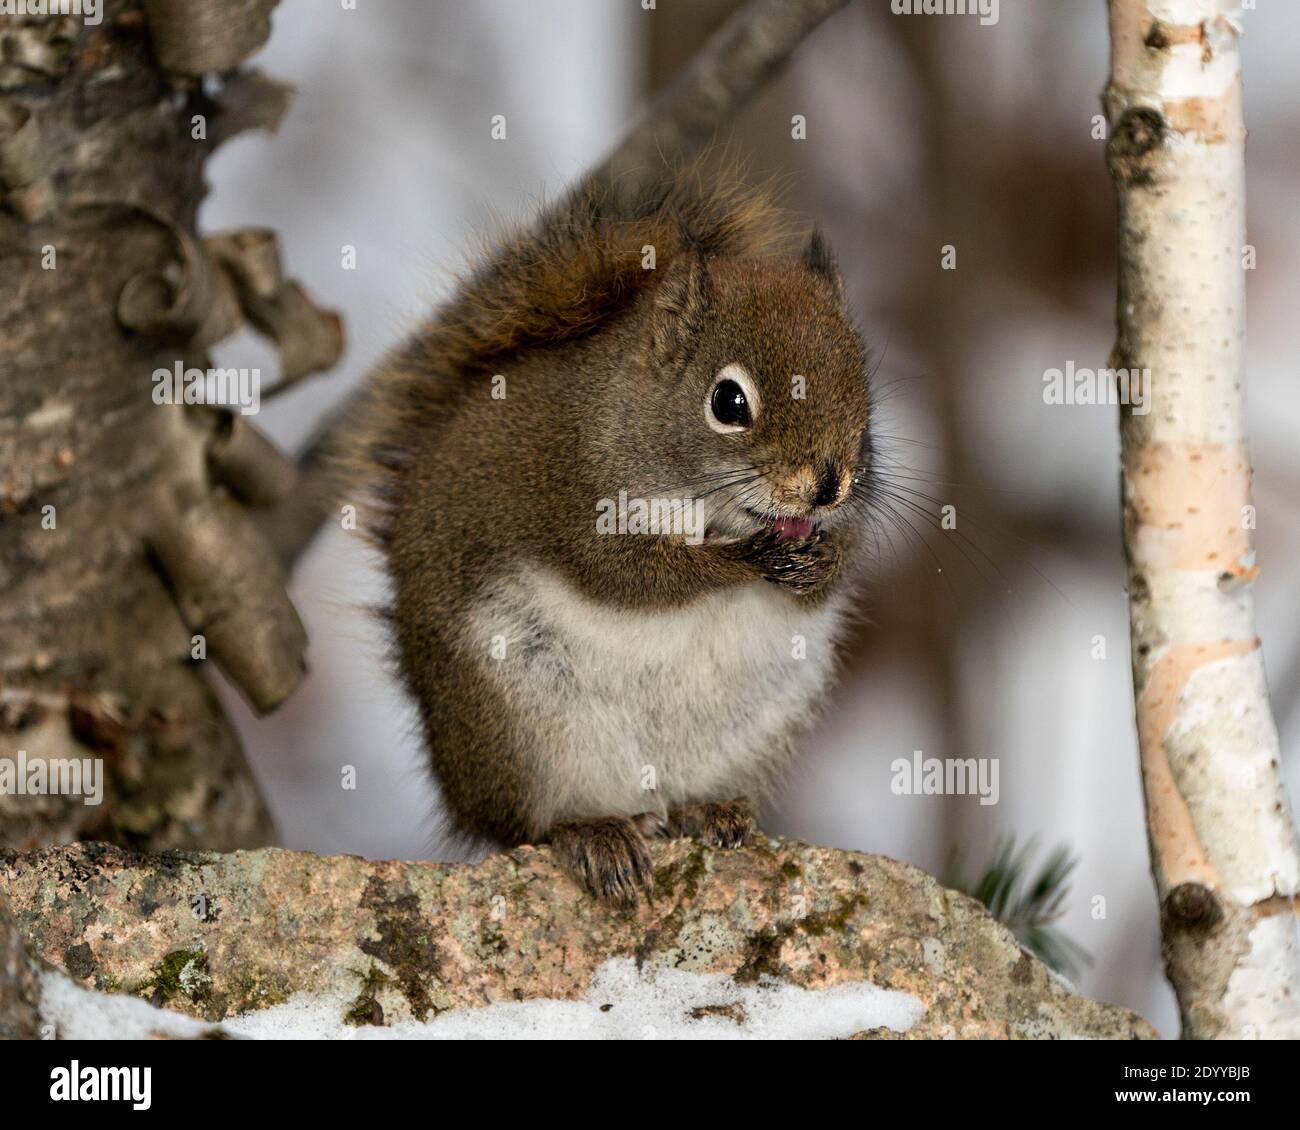 Eichhörnchen sitzt auf einem Felsen und leckt seine Pfoten, zeigt Zunge, braunes Fell, buschigen Schwanz in der Wintersaison in seiner Umgebung und Lebensraum. Bild. Stockfoto